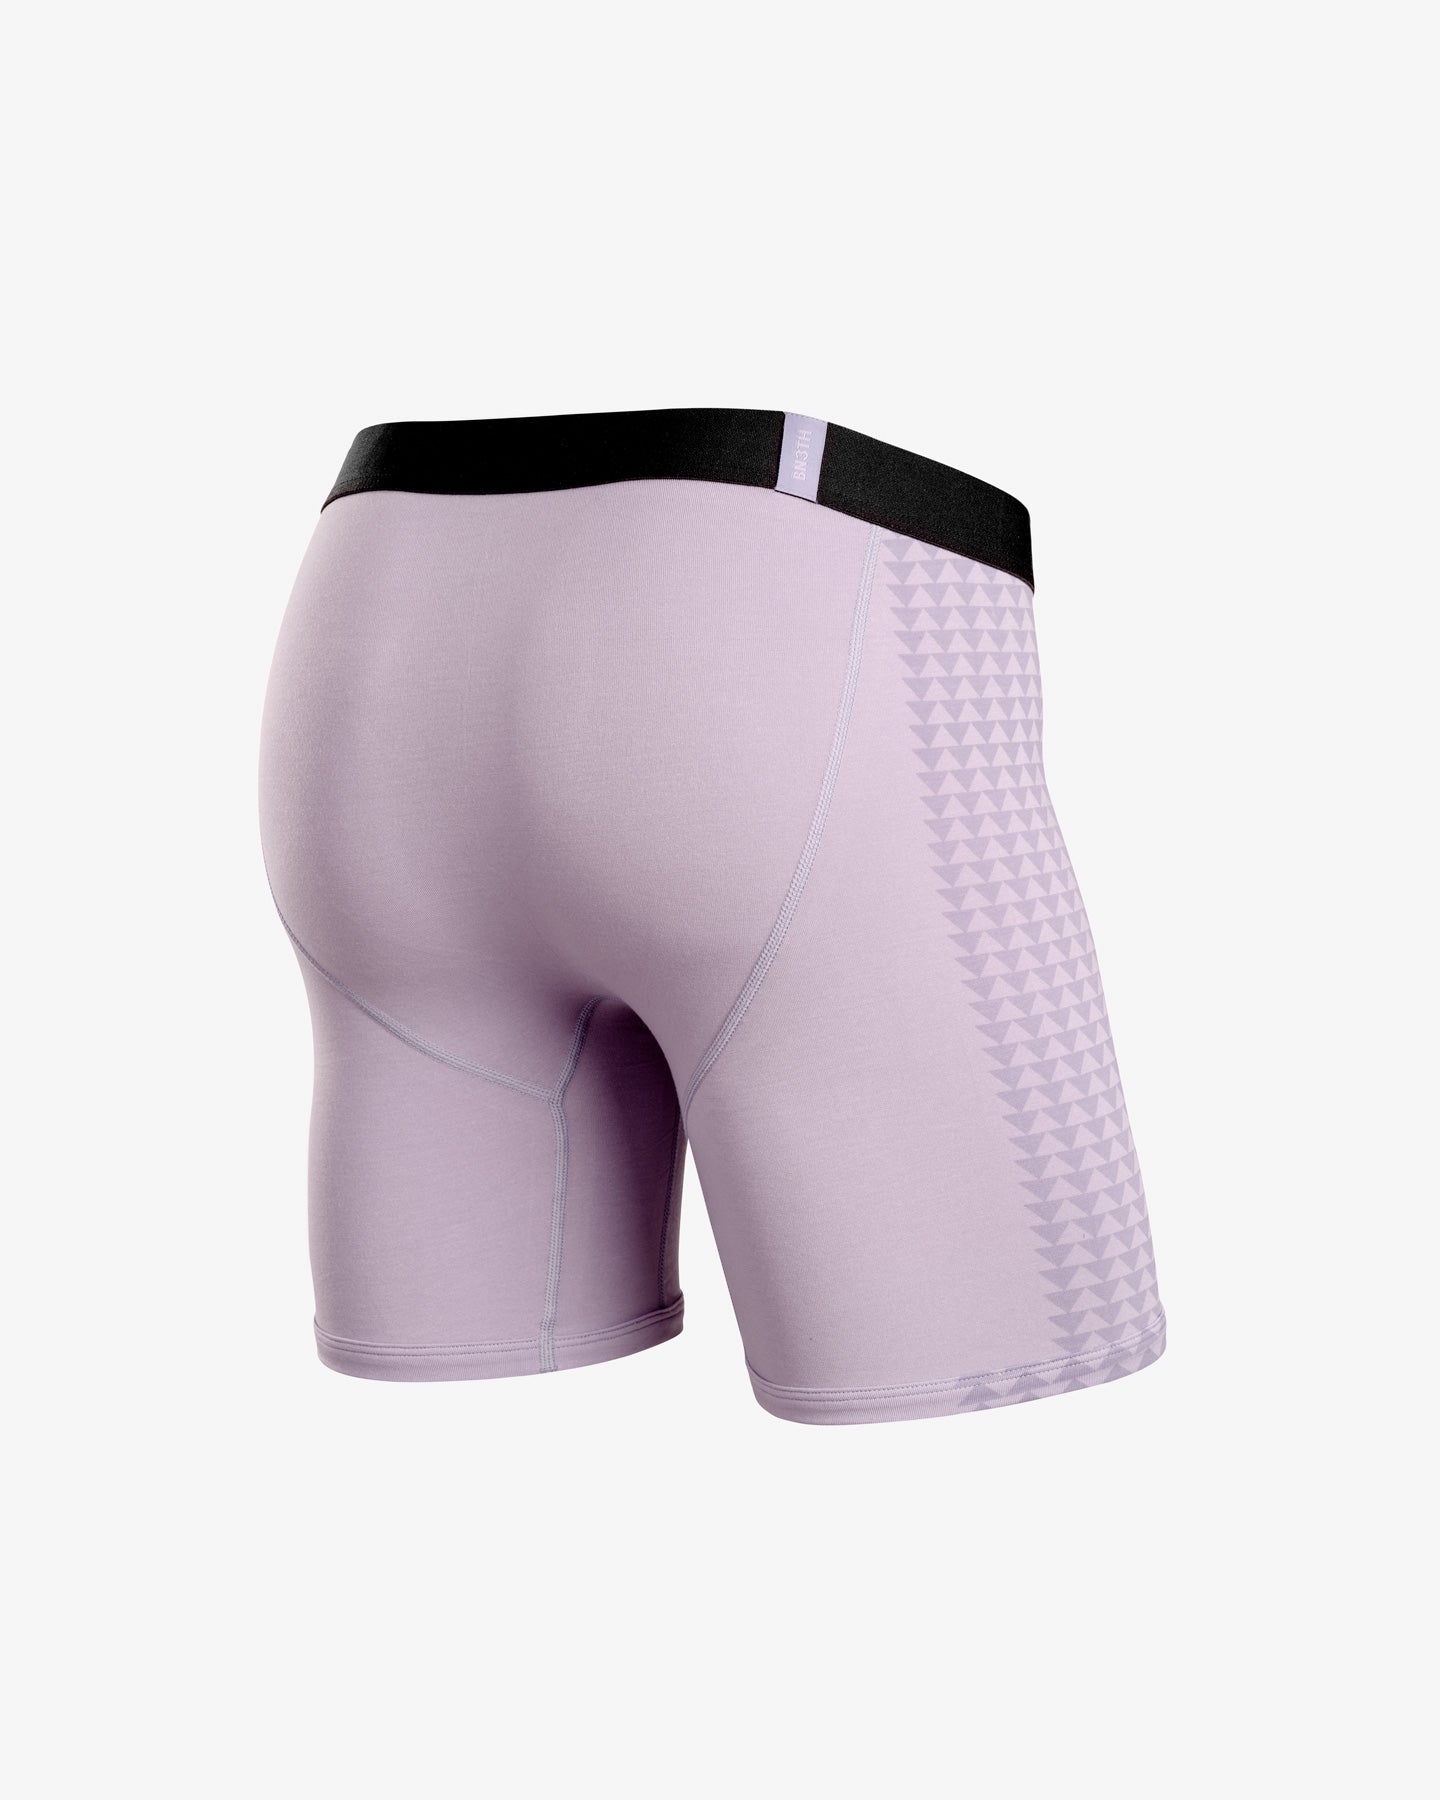 Pump Underwear For Men - Best Price in Singapore - Jan 2024